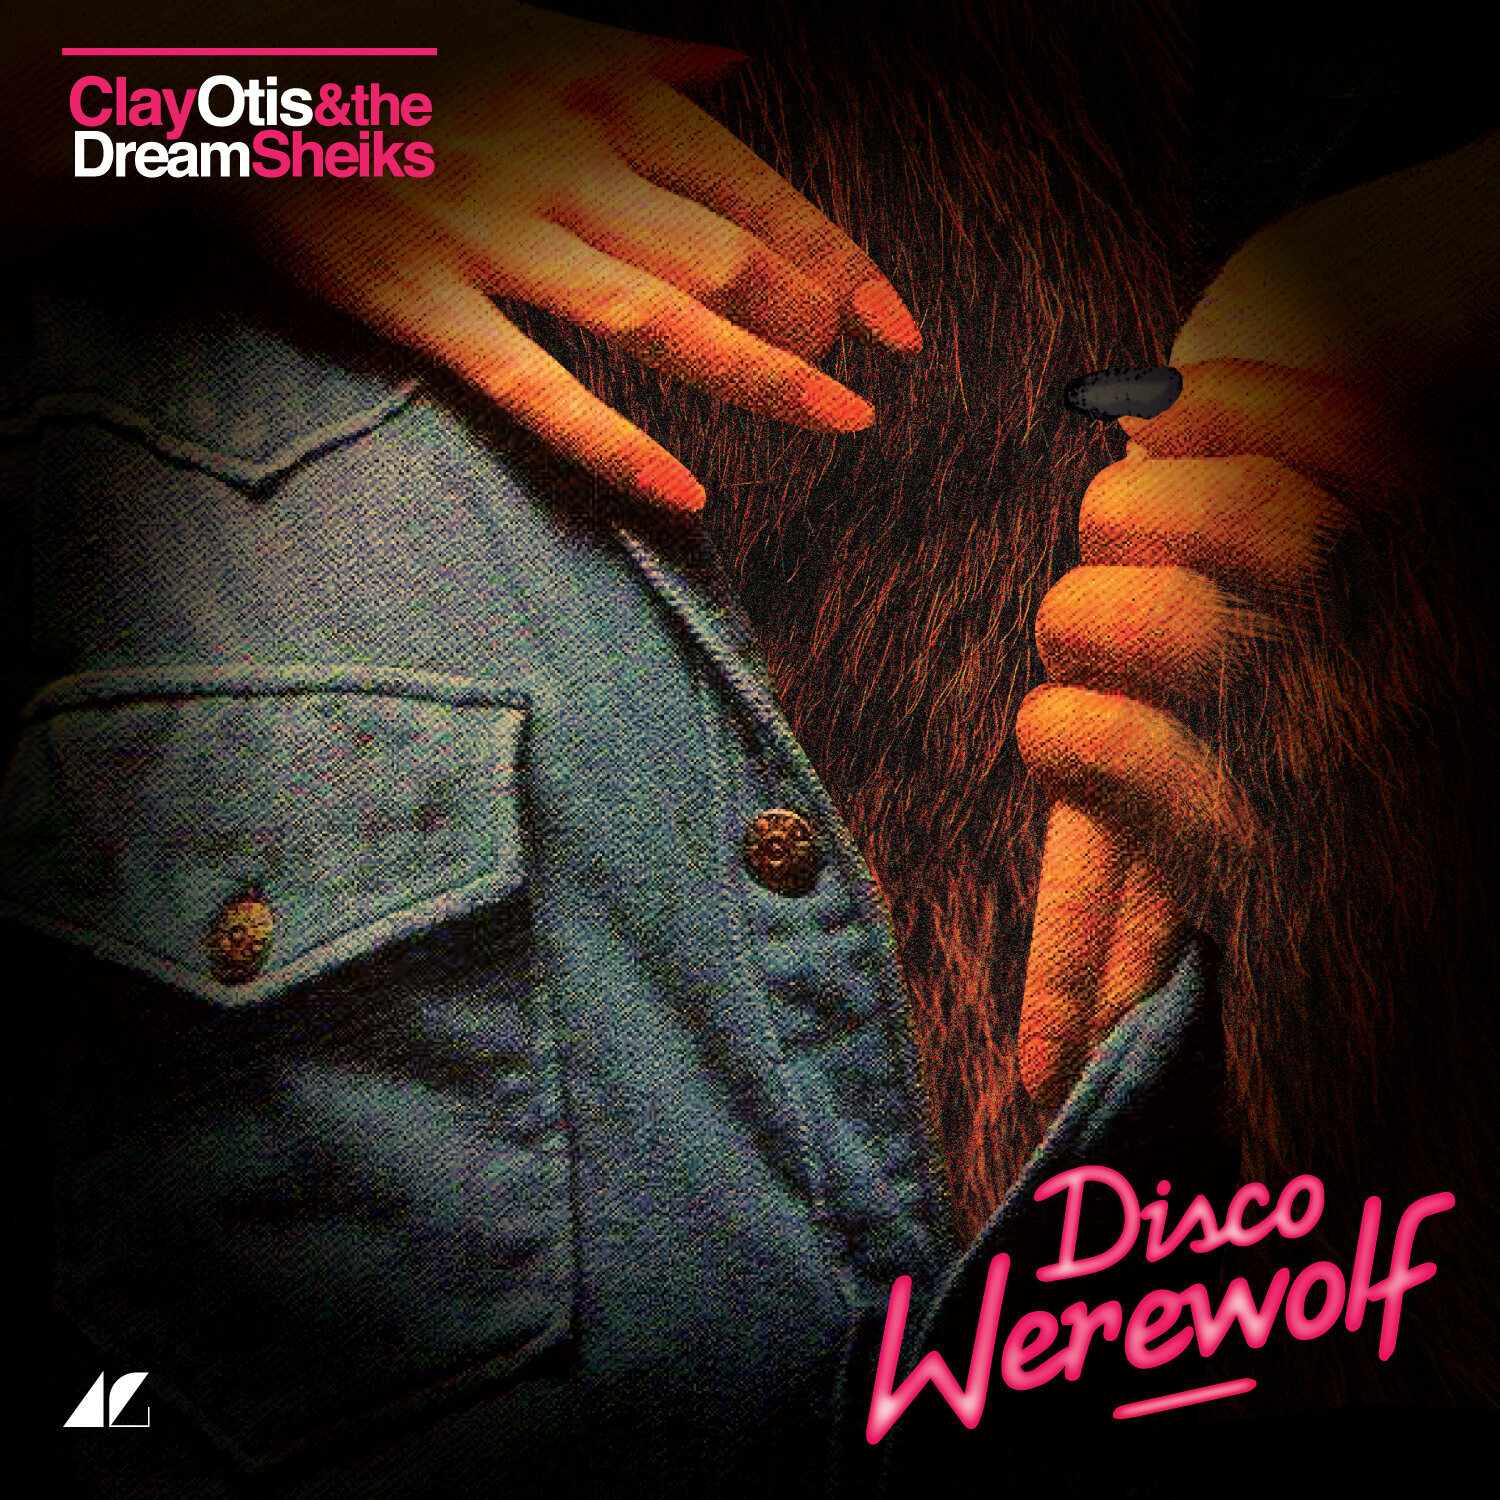 CO+DS_Disco-Werewolf_1500x1500px.jpg